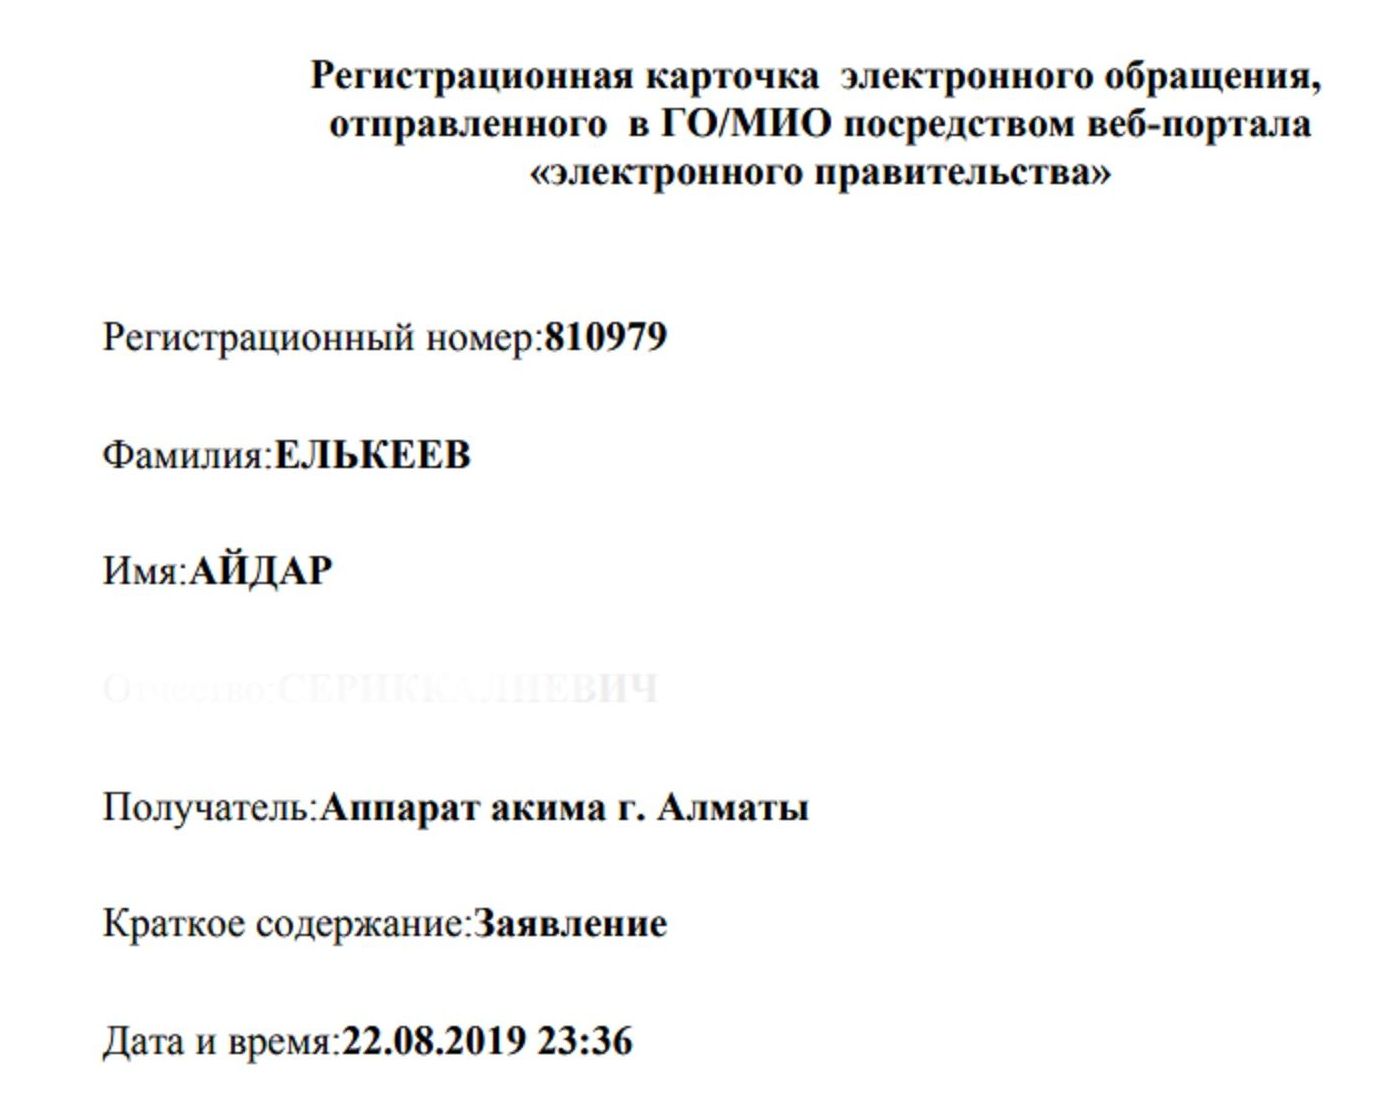 Карточка электронного заявления в акимат Алматы о проведении митинга в поддержку ЛГБТК-сообщества 